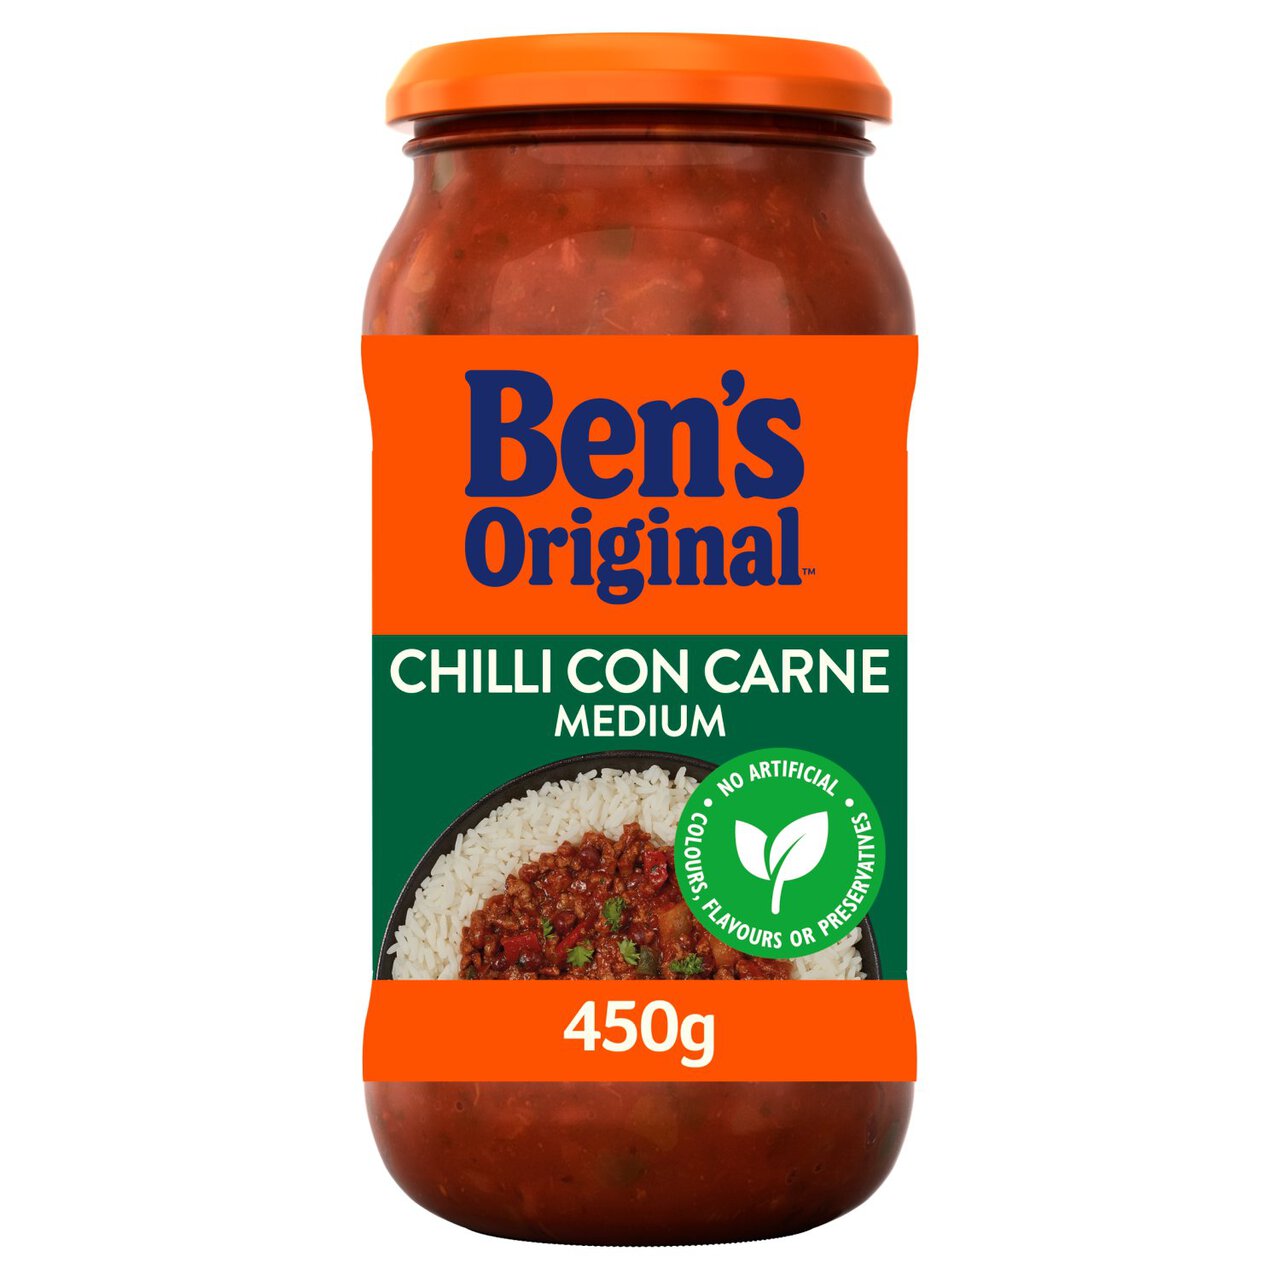 Ben's Original Medium Chilli Con Carne Sauce 450g